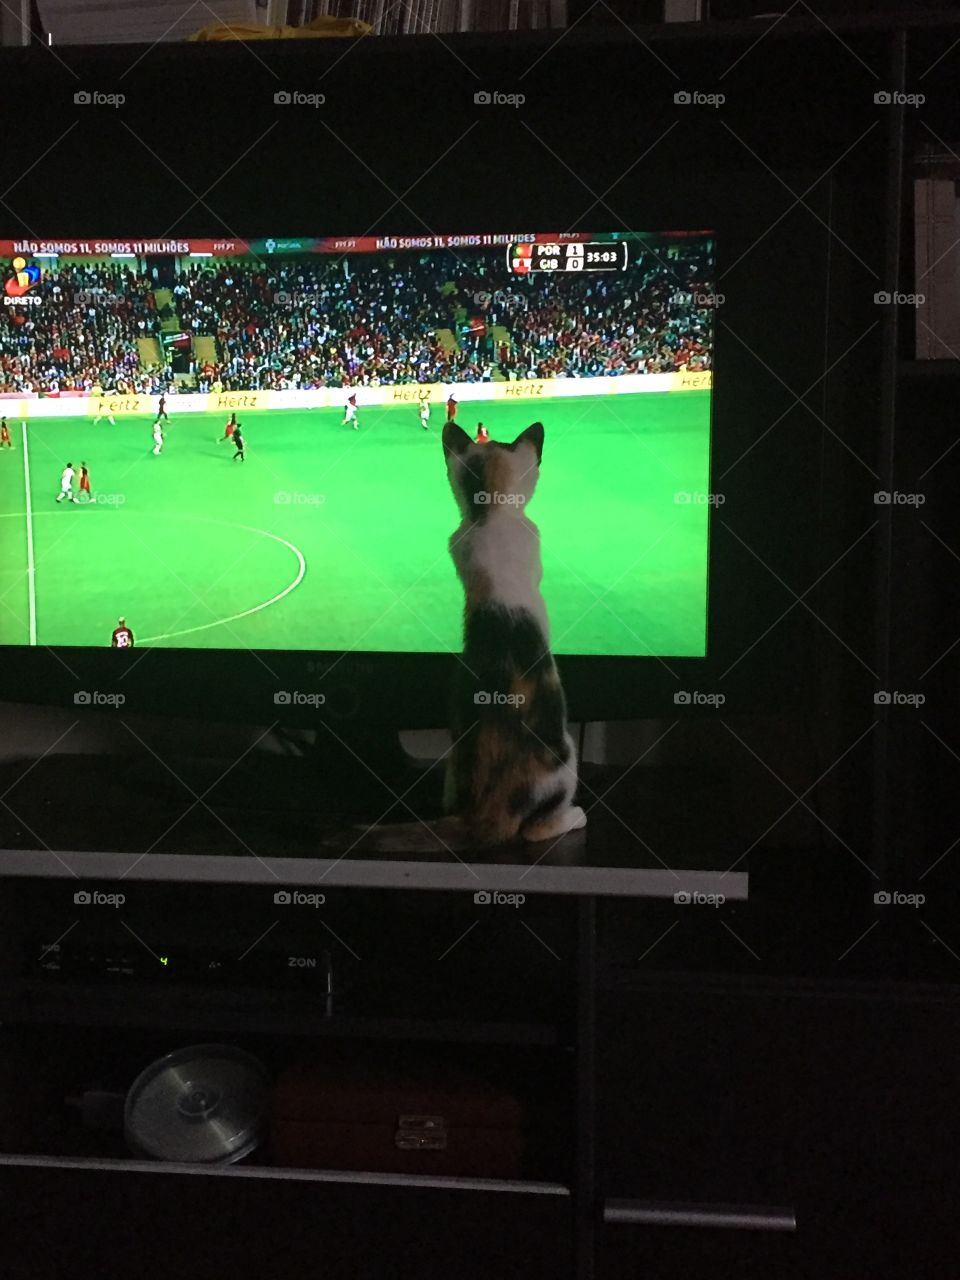 😊 Olívia likes football 😊